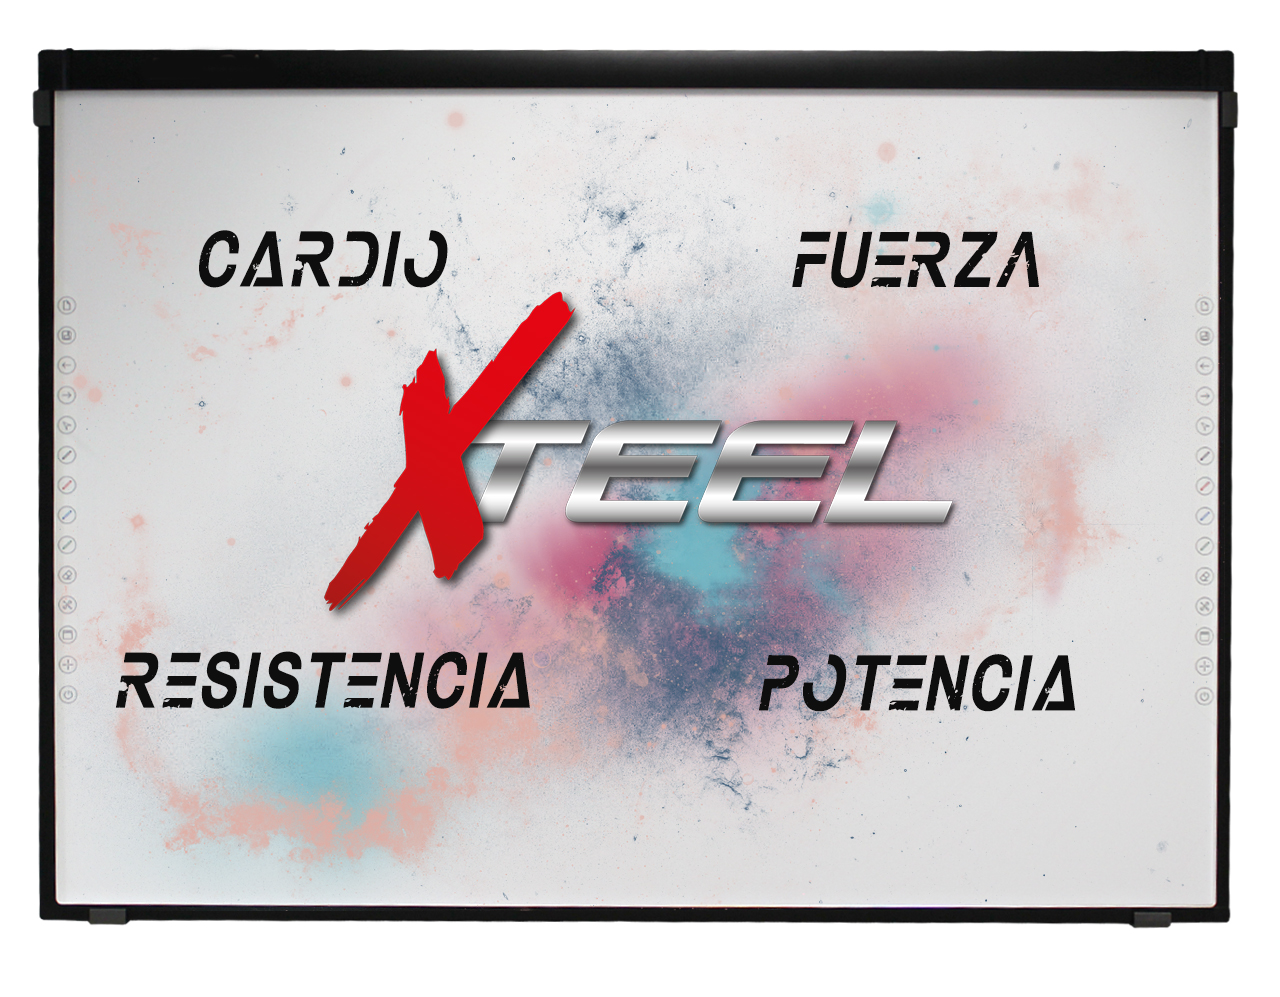 CARDIO+FUERZA+POTENCIA+RESISTENCIA = XTEEL